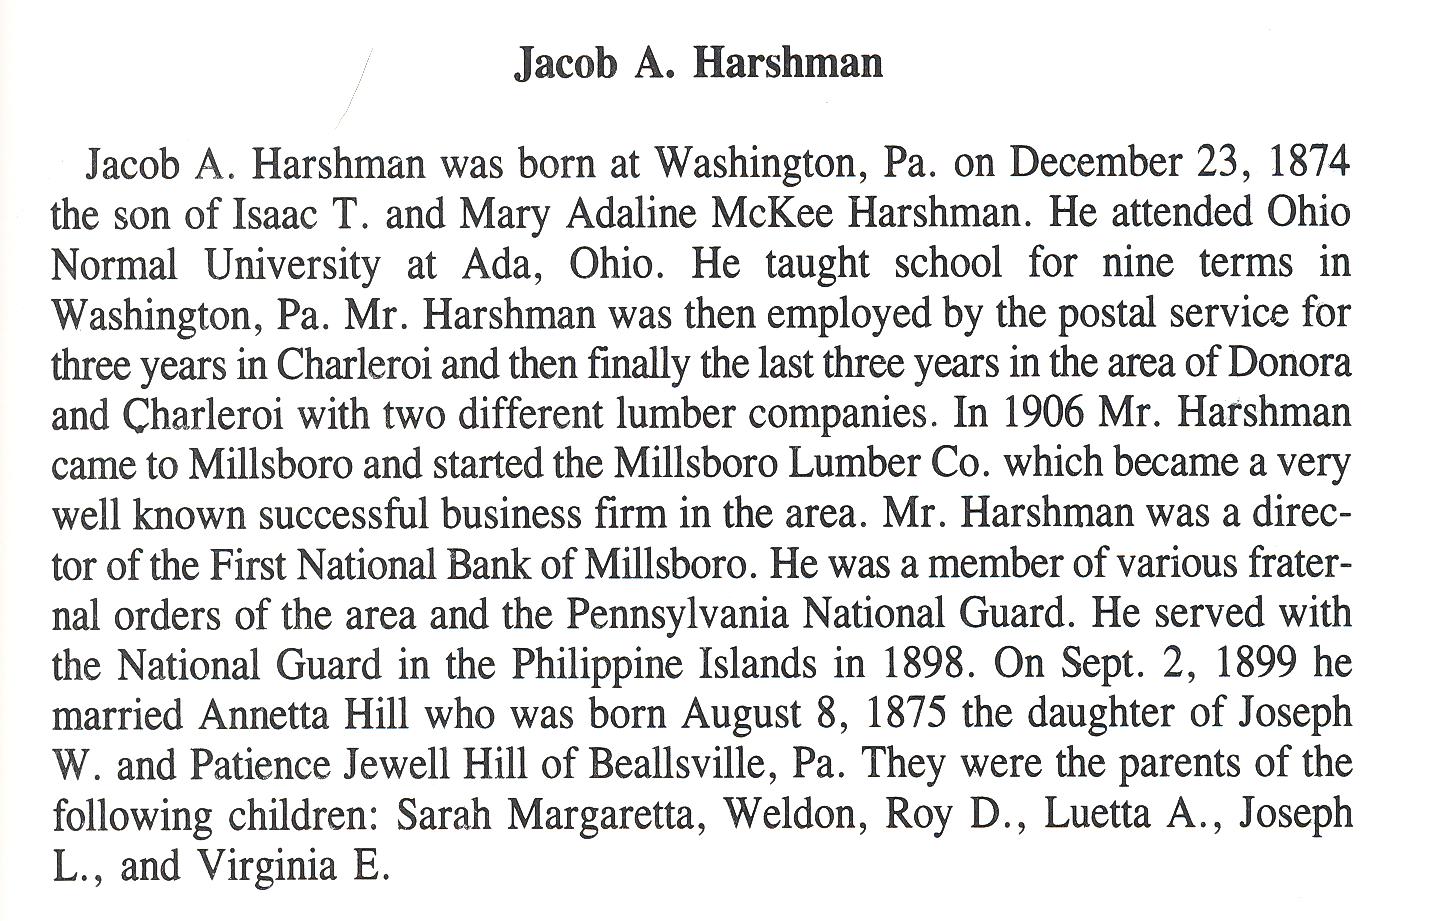 Jacob Harshman